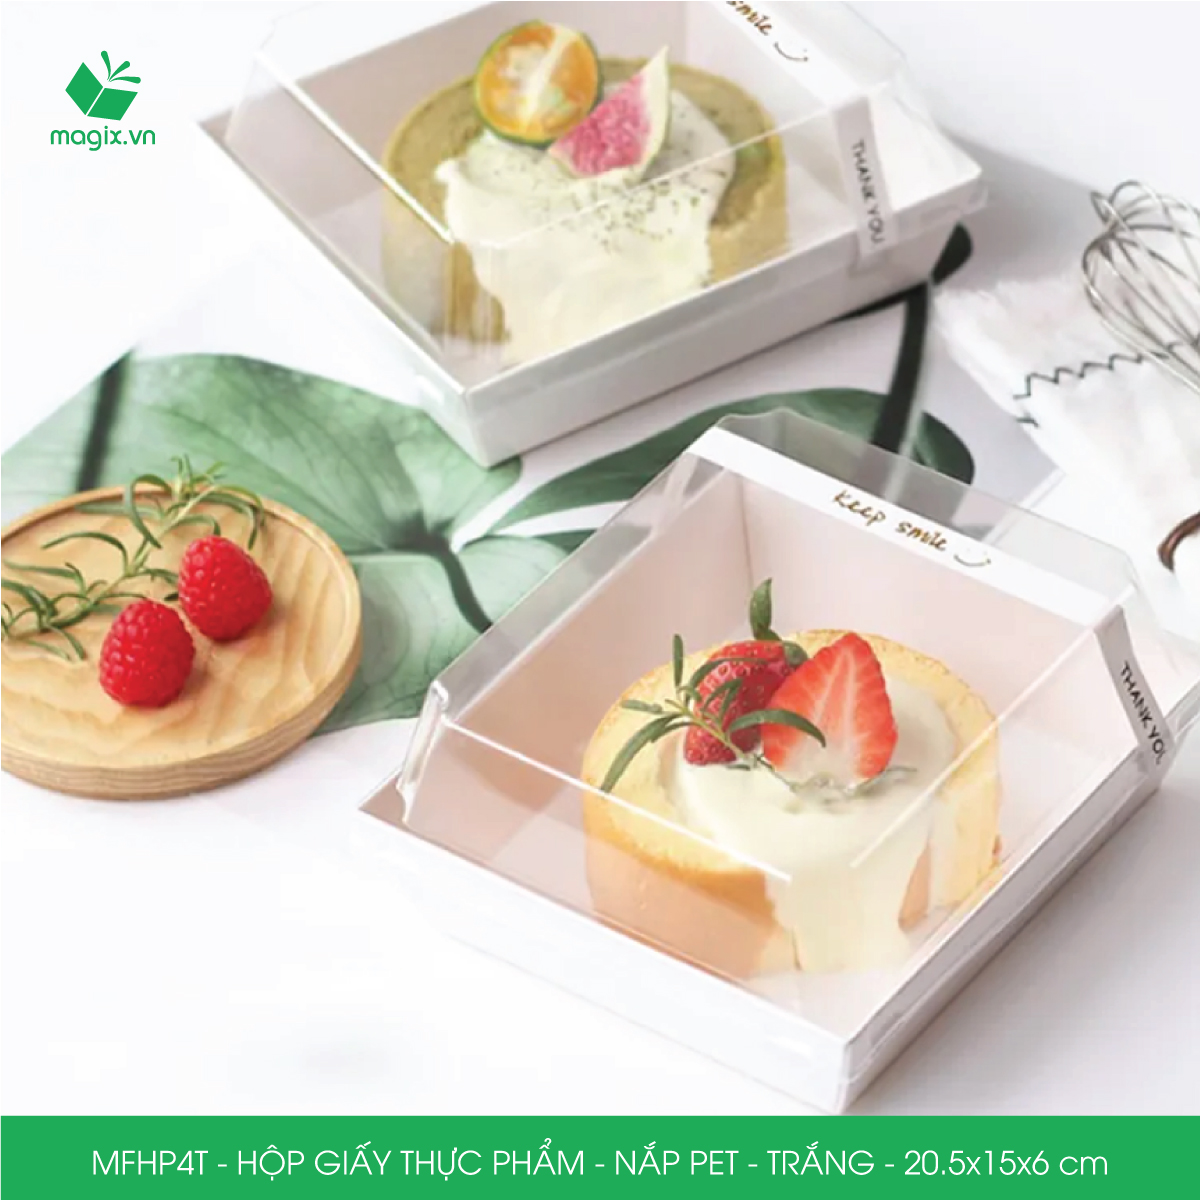 Hình ảnh MFHP4T - 20.5x15x6 cm - 100 hộp giấy thực phẩm màu trắng nắp Pet, hộp giấy chữ nhật đựng thức ăn, hộp bánh nắp trong